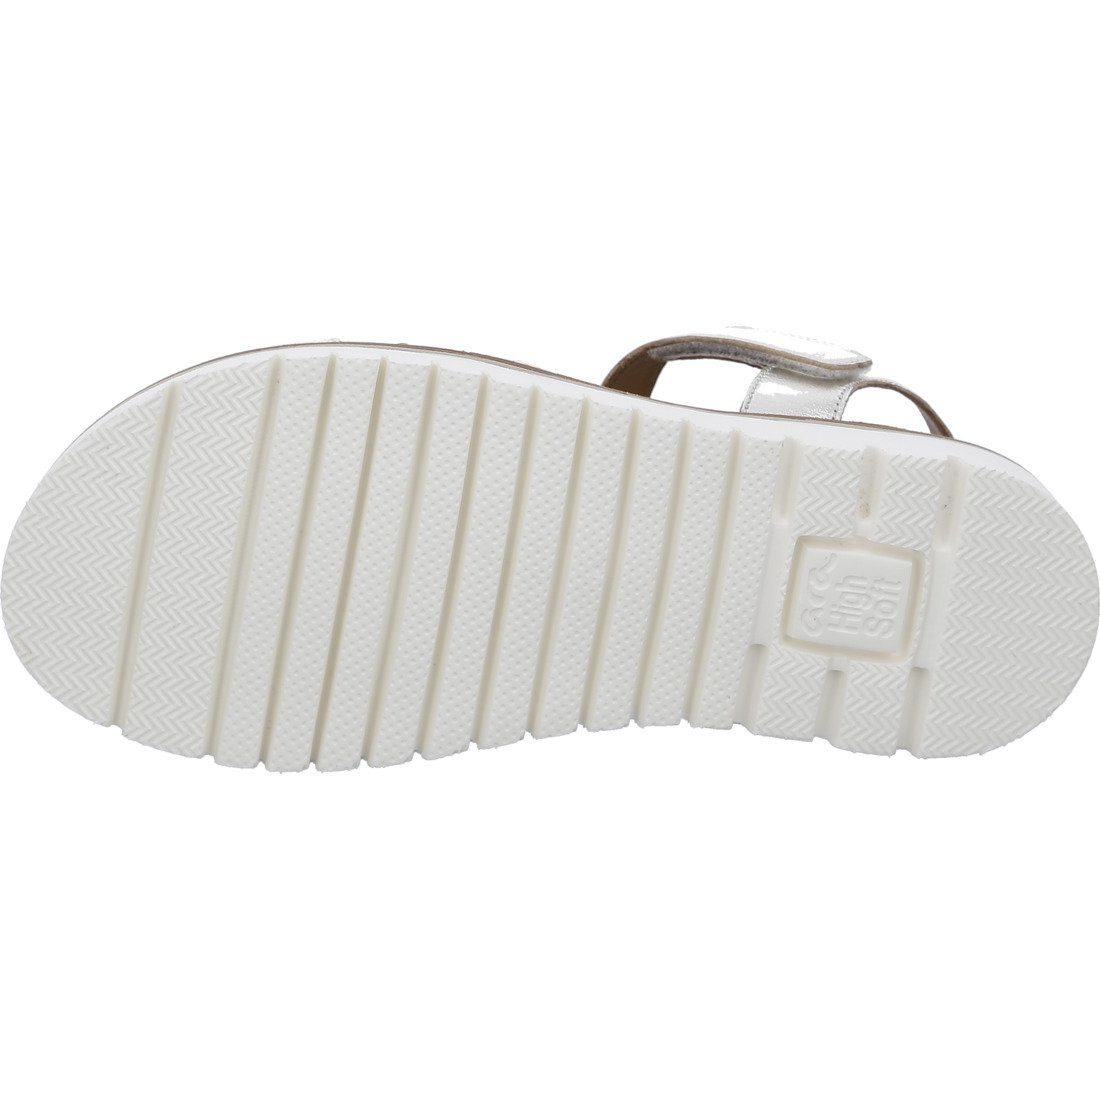 Rauleder Schuhe, Kent-Sport Ara Sandalette - Ara Sandalette 048014 beige